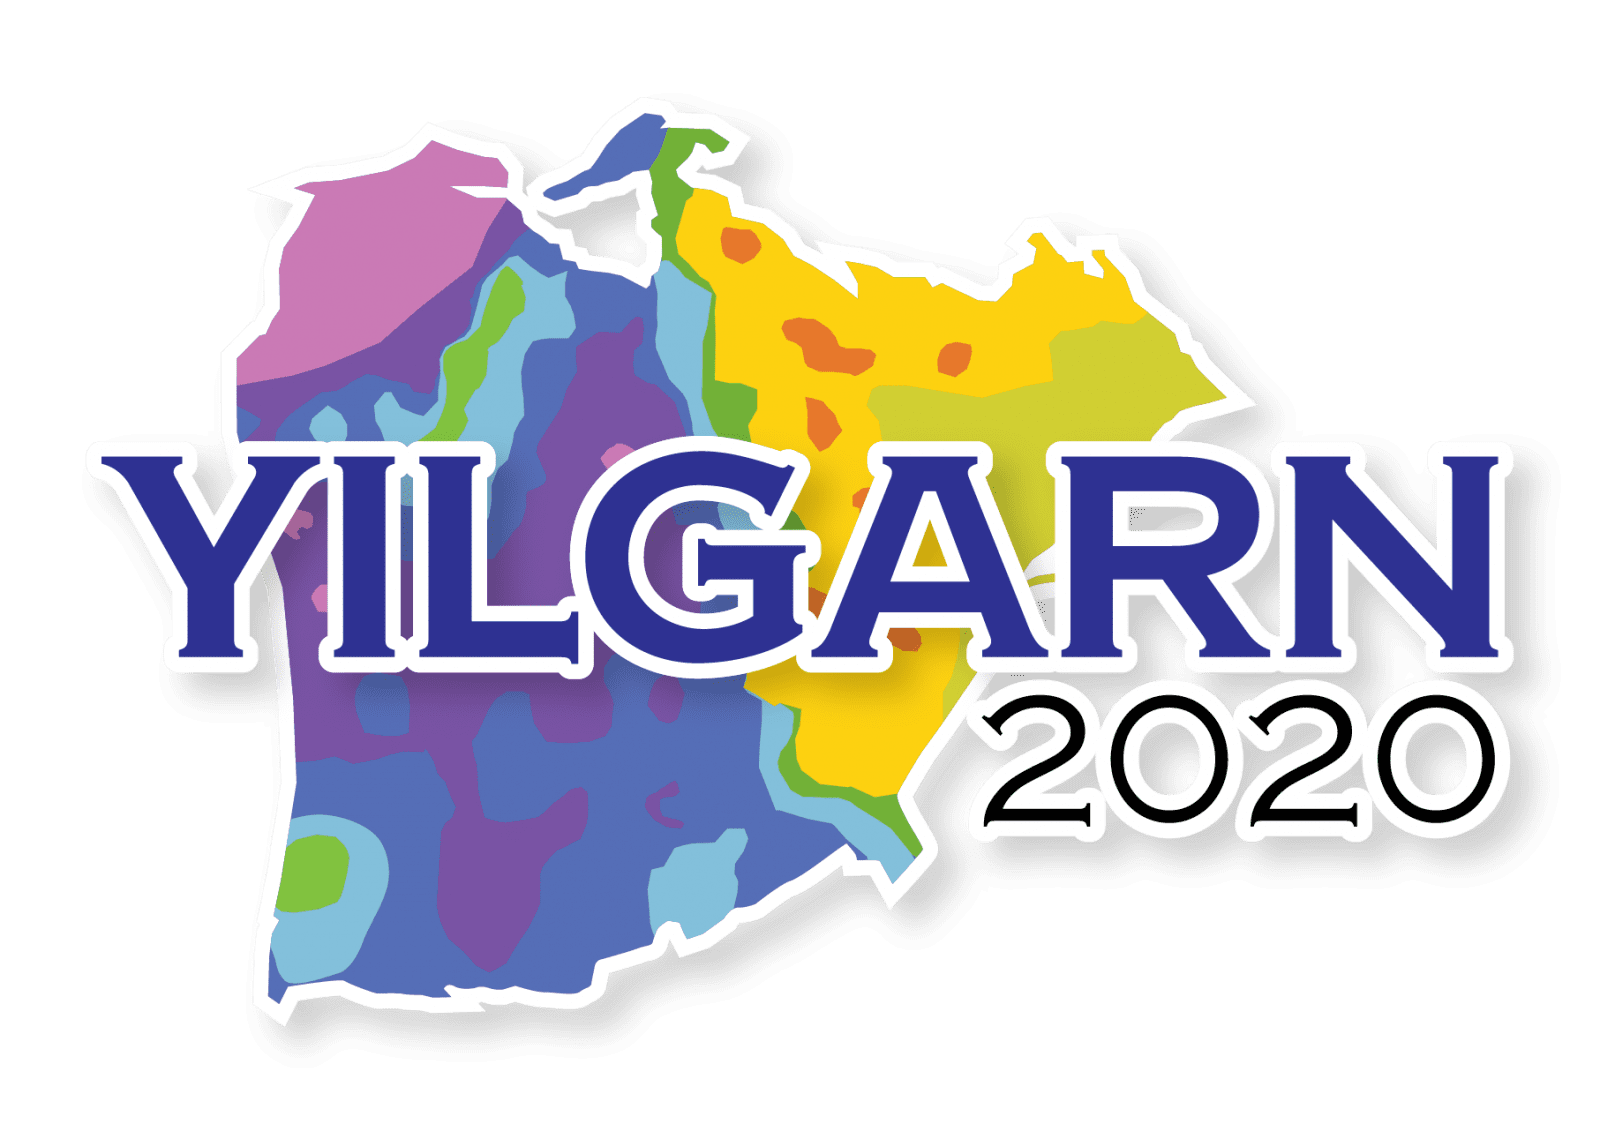 Yilgarn 2020